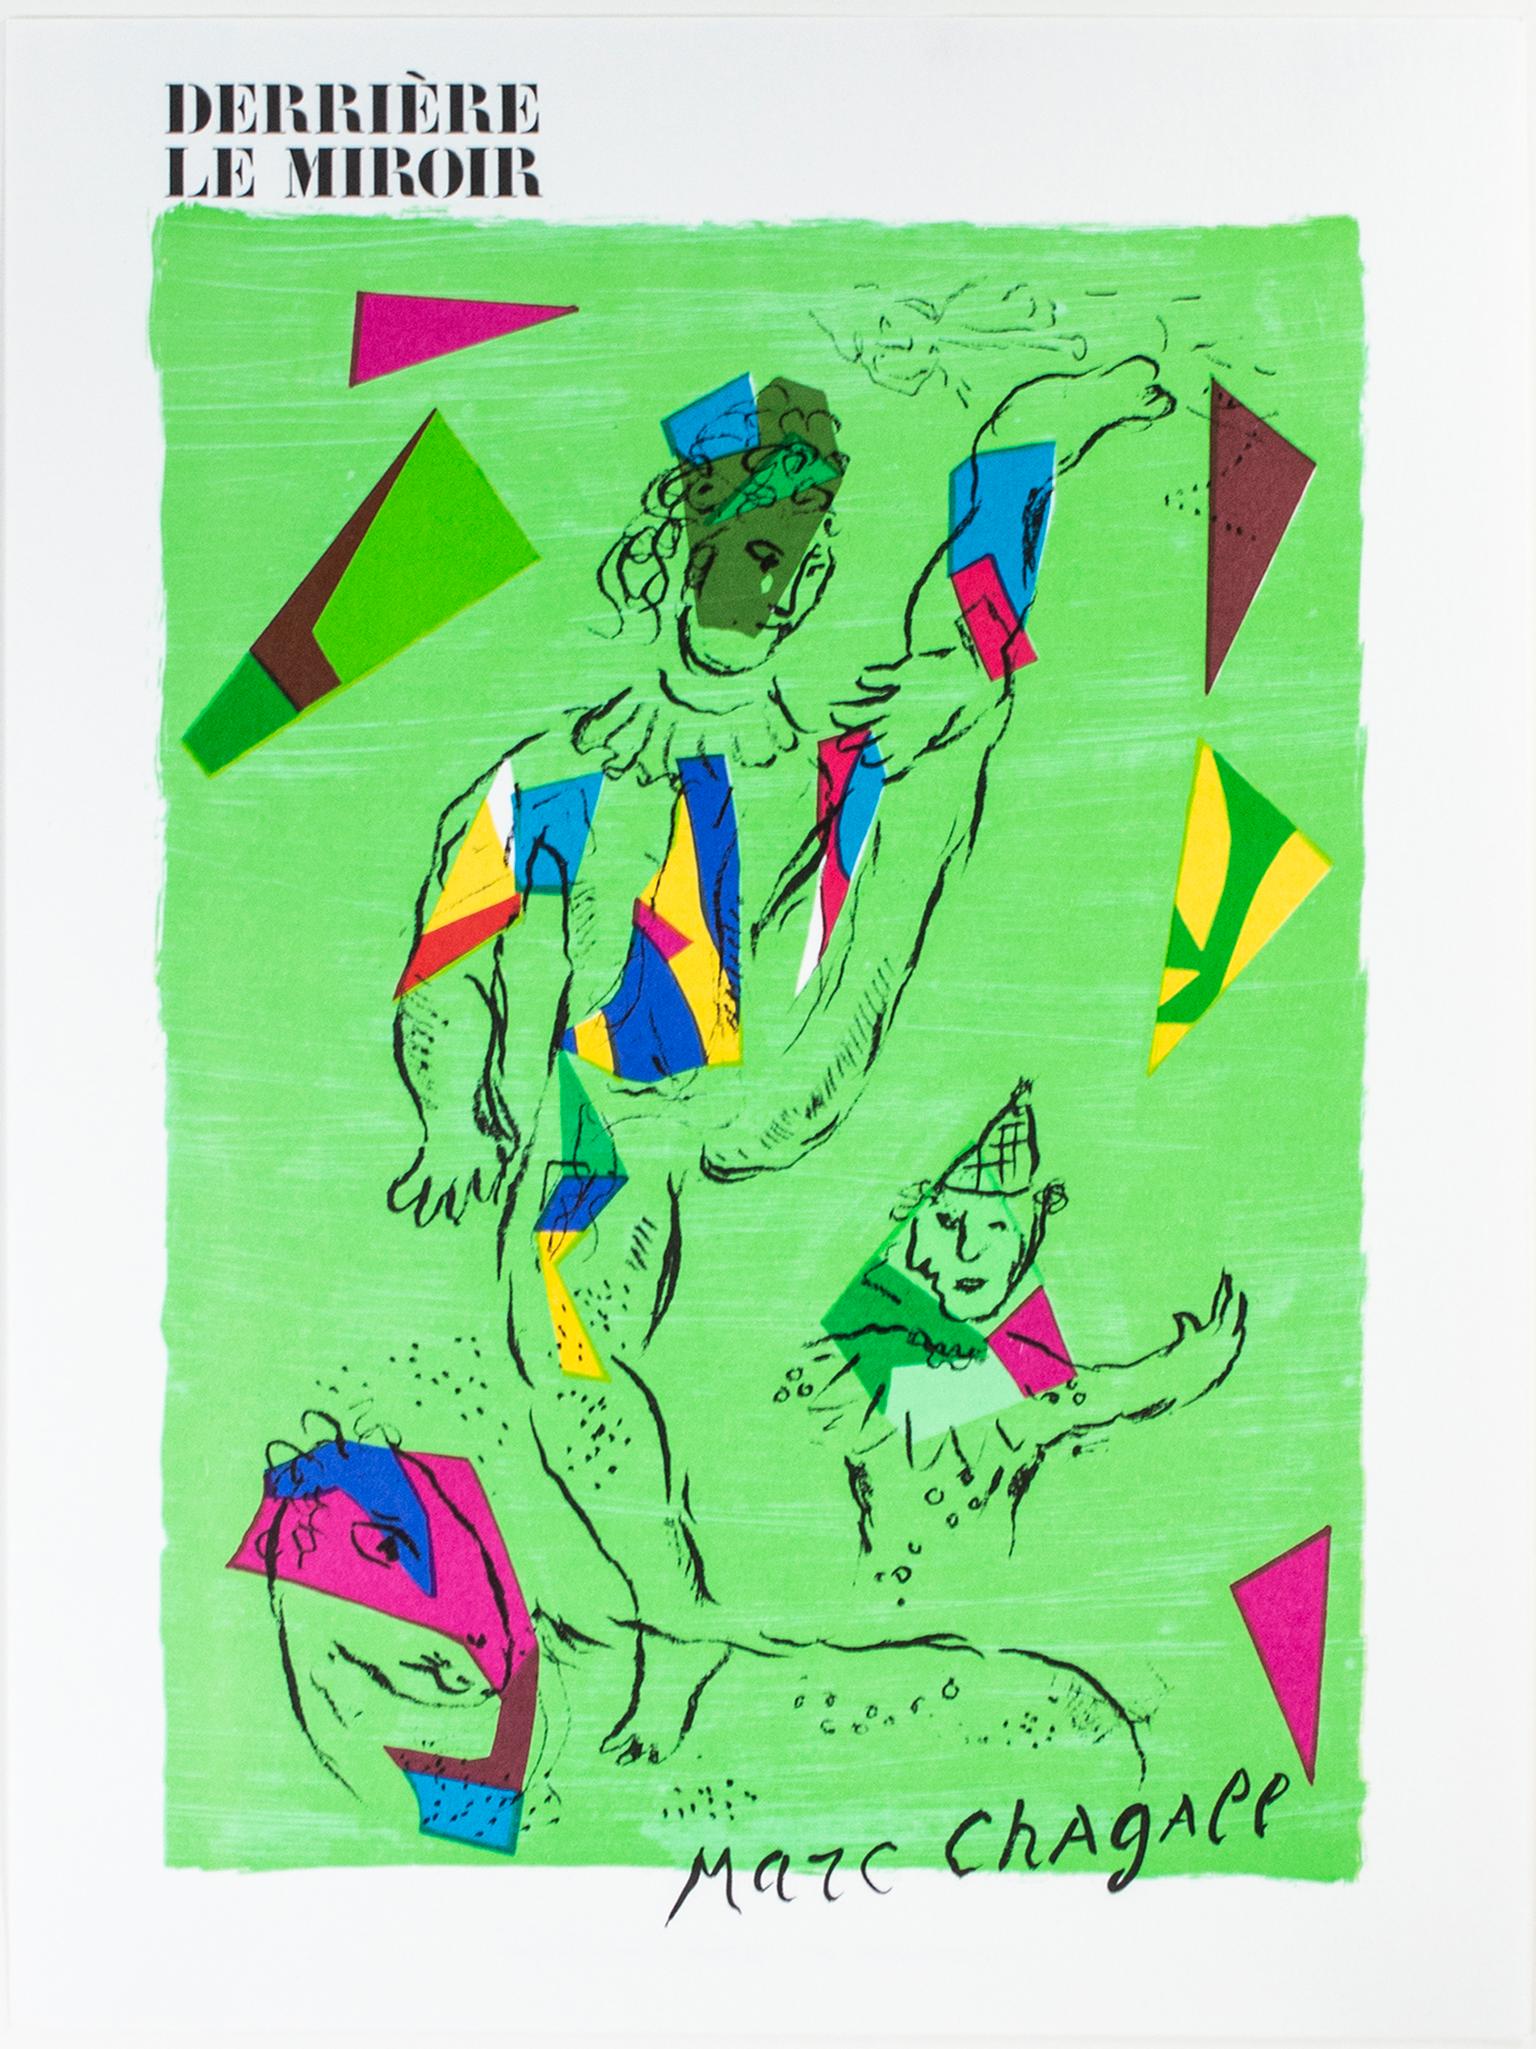 « L'Acrobate Vert - Coverture (The Green Acrobat) », une lithographie originale en couleur - Print de Marc Chagall